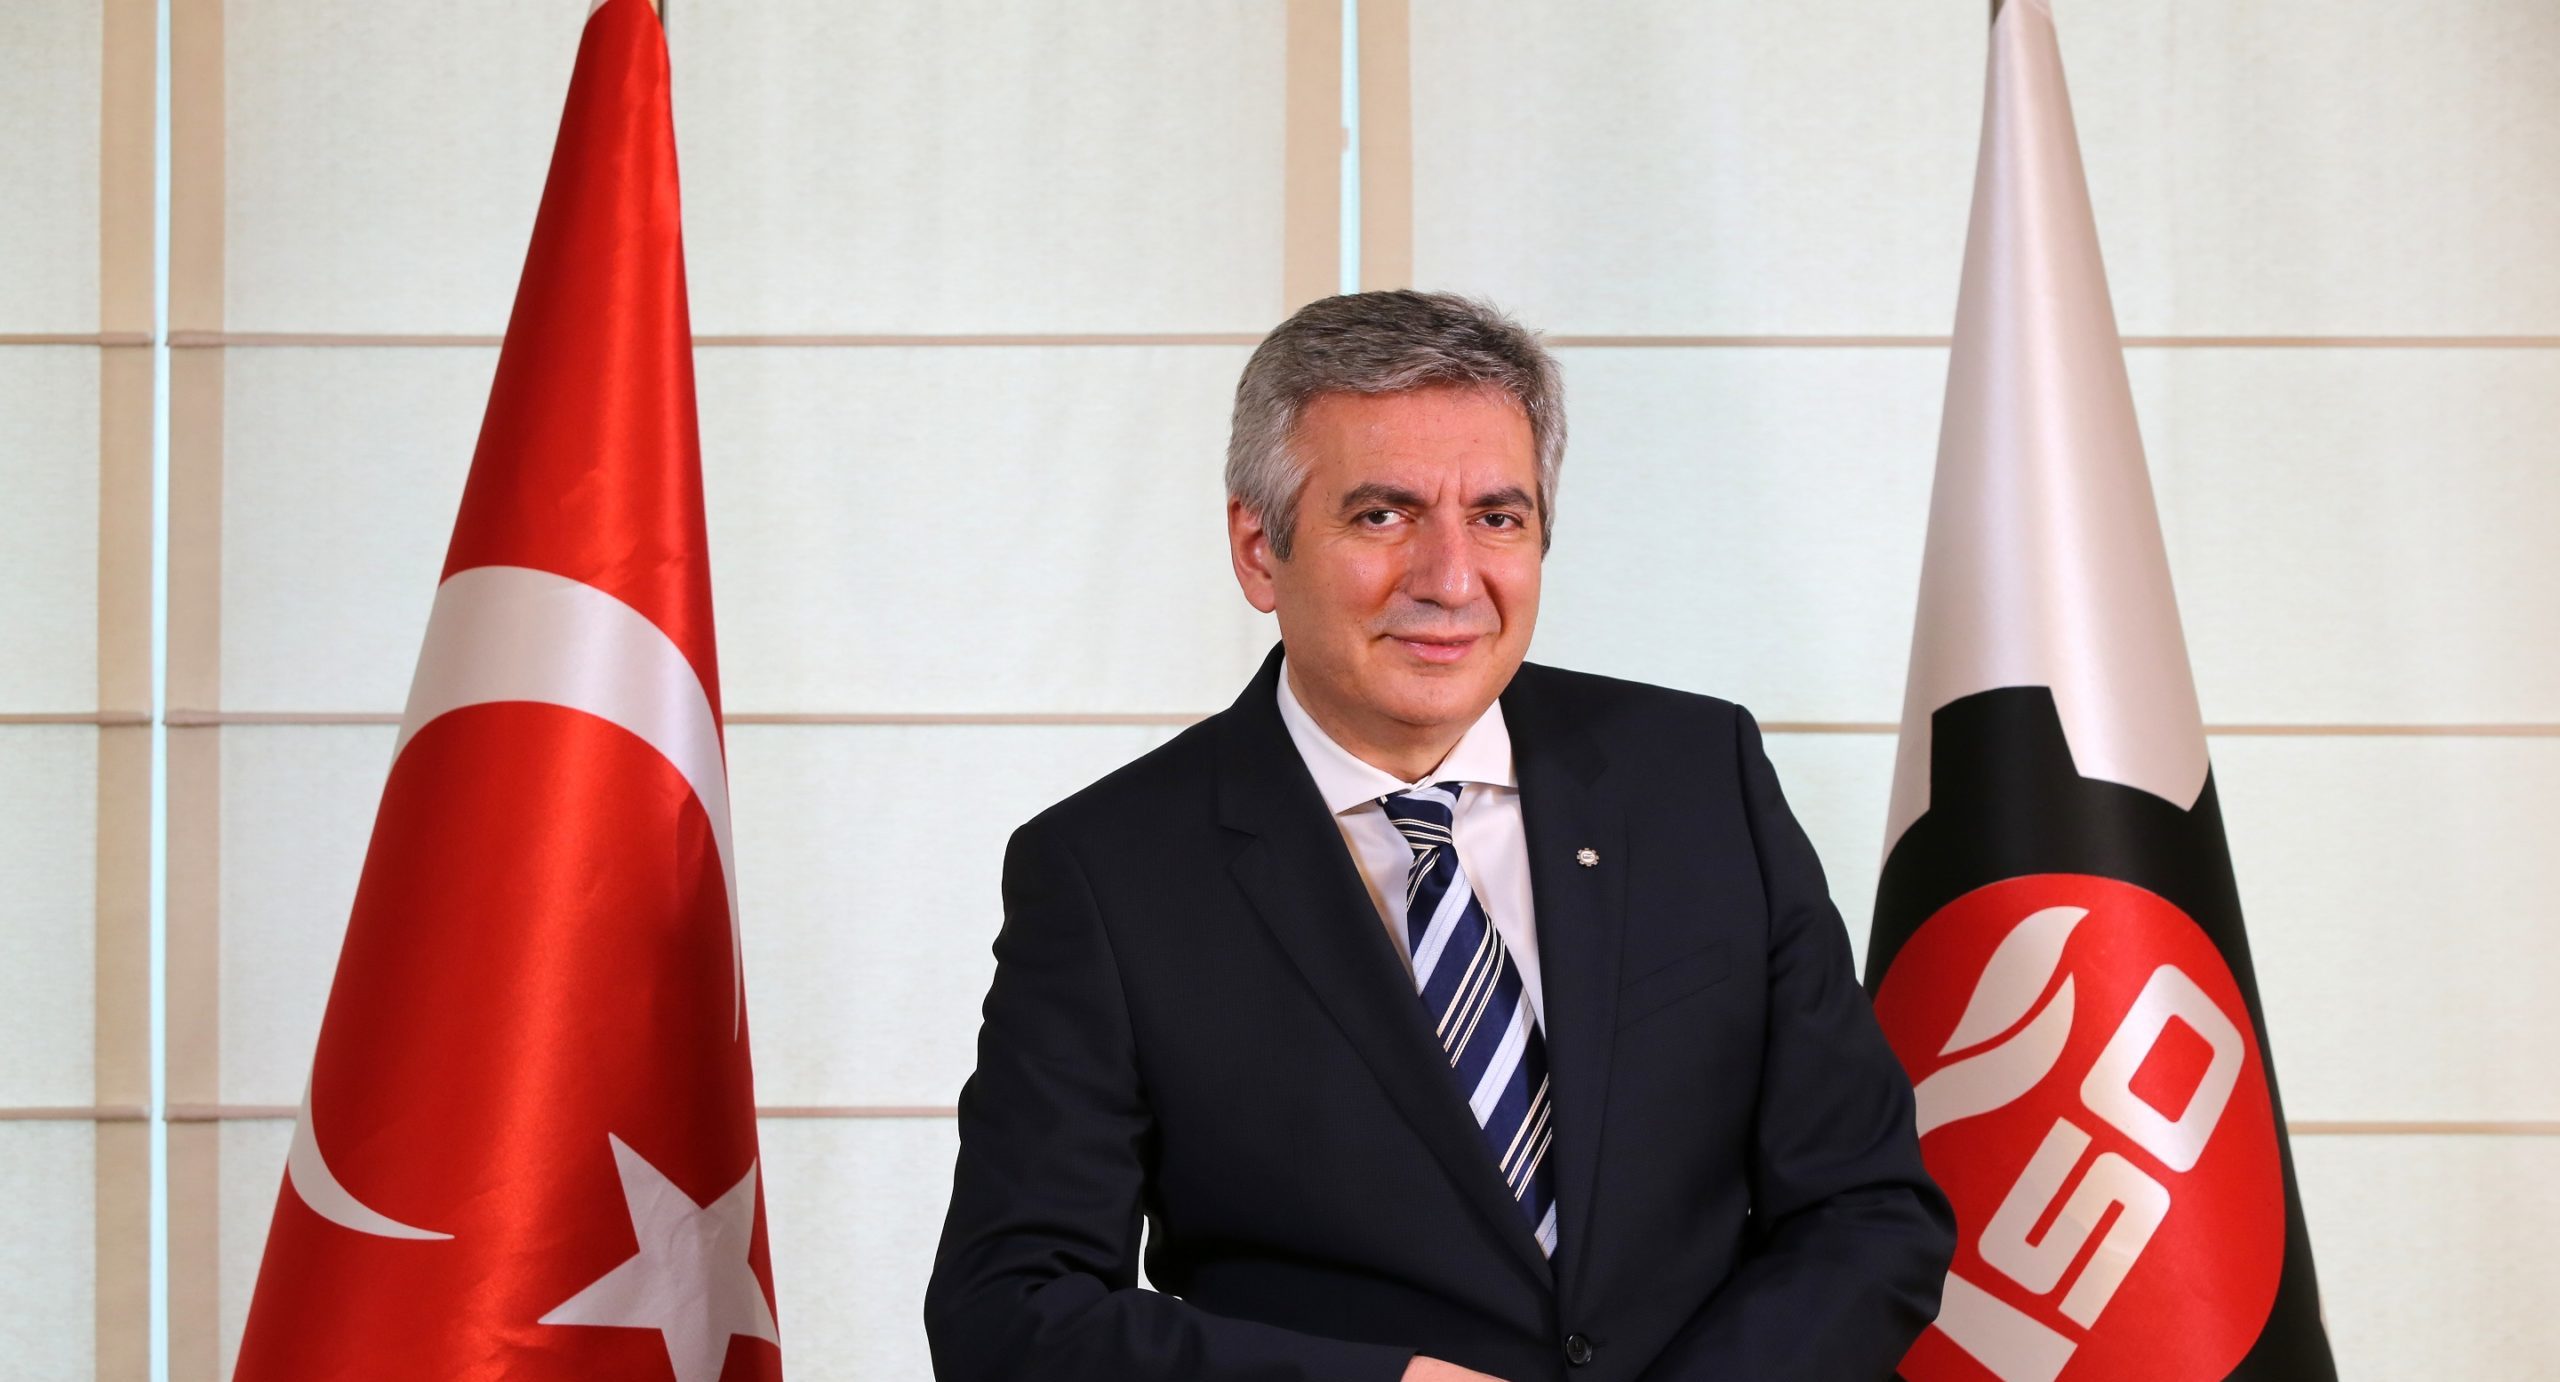 İSO Başkanı Bahçıvan: “Sanayicinin kendi enerjisini üretmesi desteklenmeli”